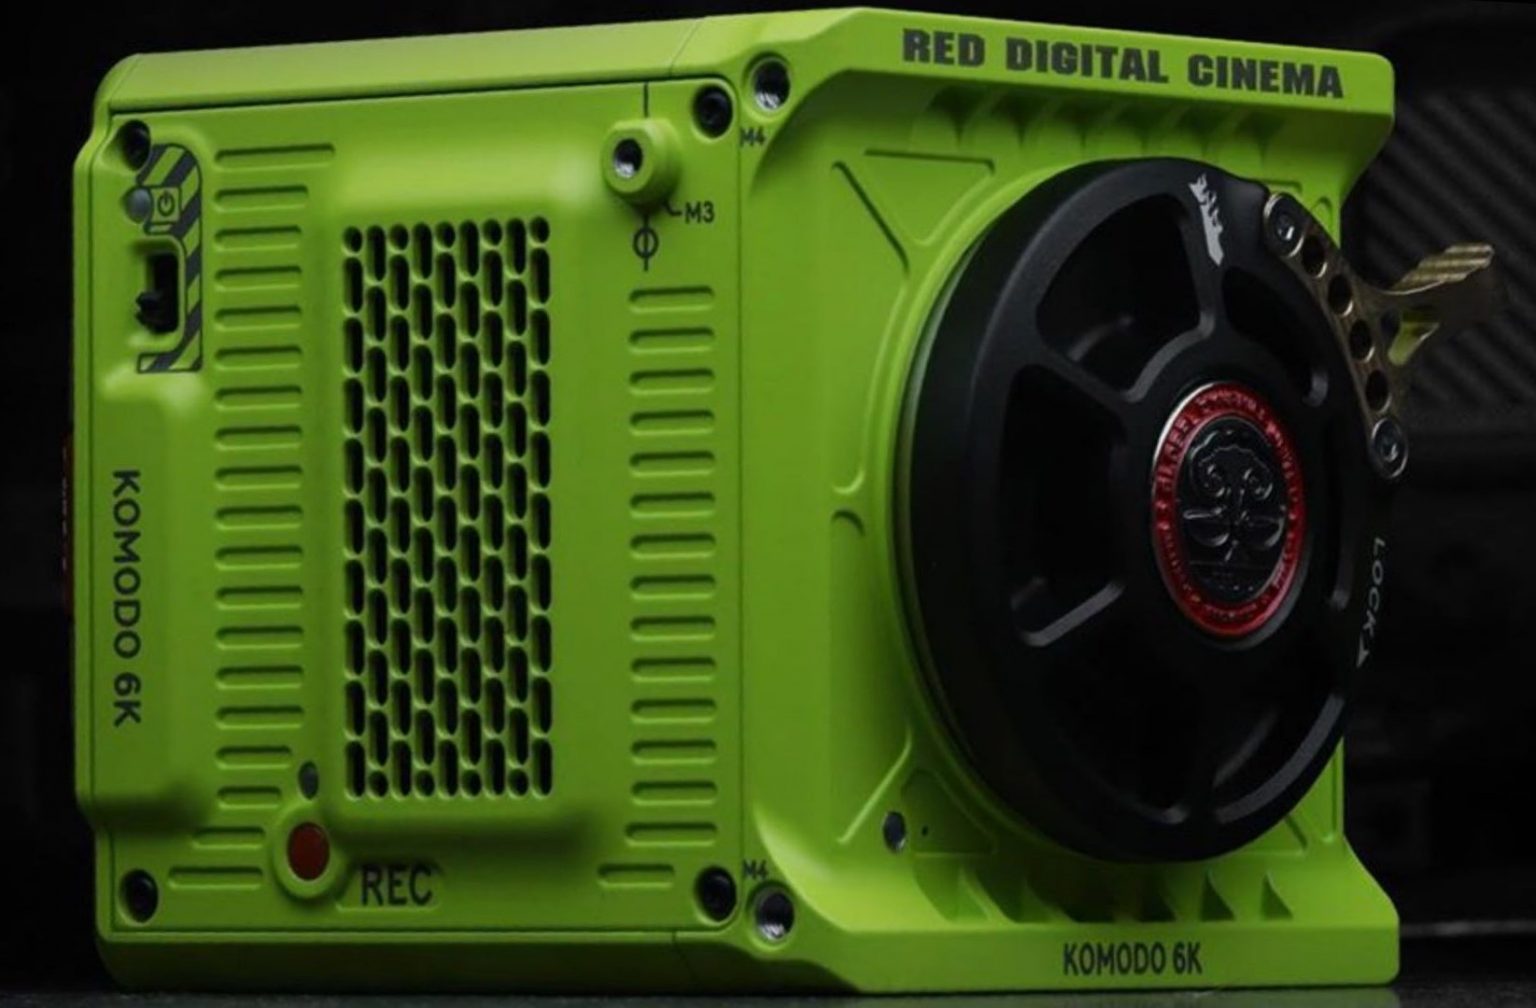 RED Komodo 6k camera price 6,000 (7,000 for colored) Photo Rumors